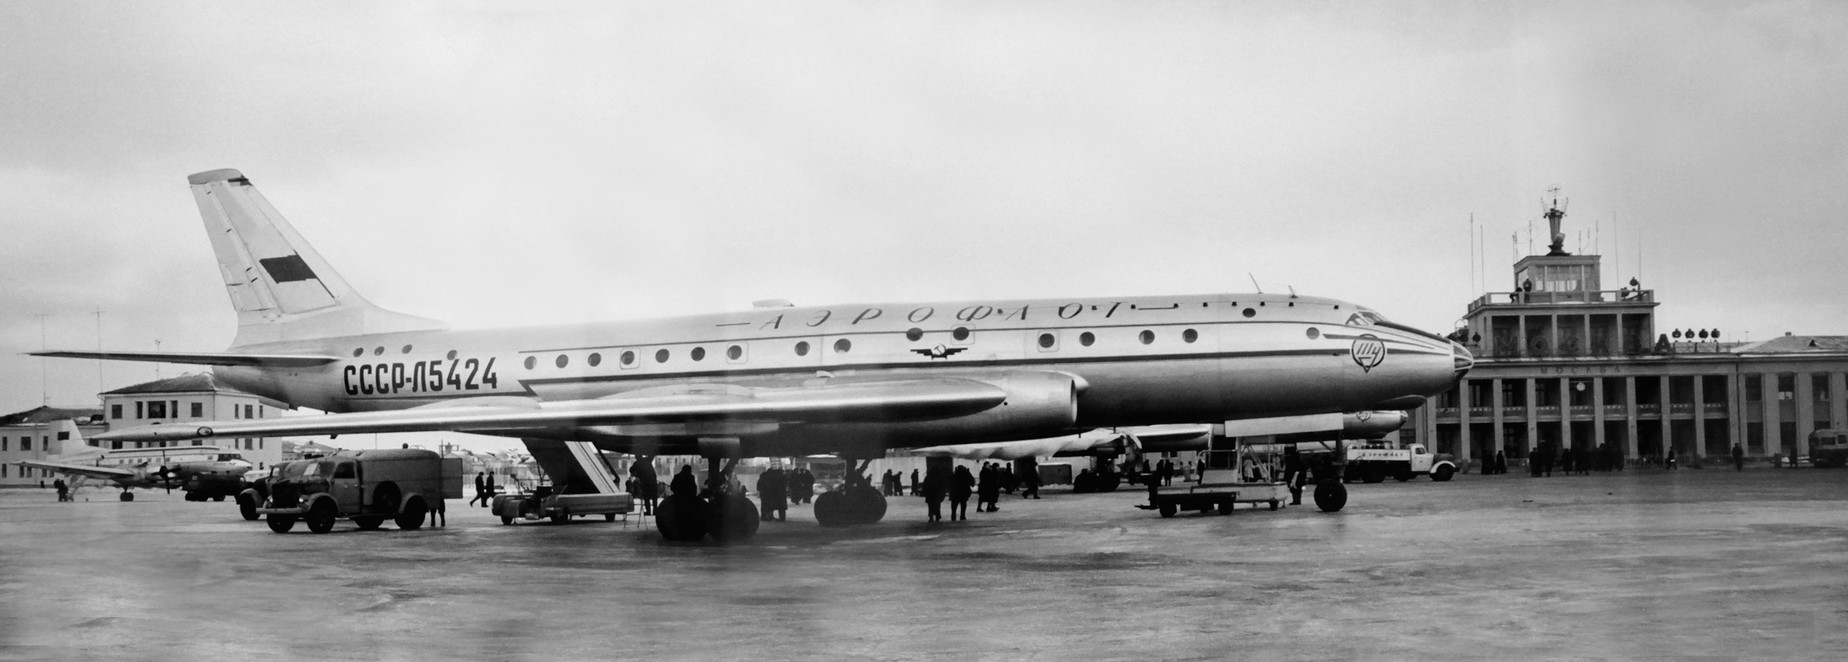 Первый советский реактивный пассажирский самолёт Ту-104 на аэродроме Внуково, 1956 г.